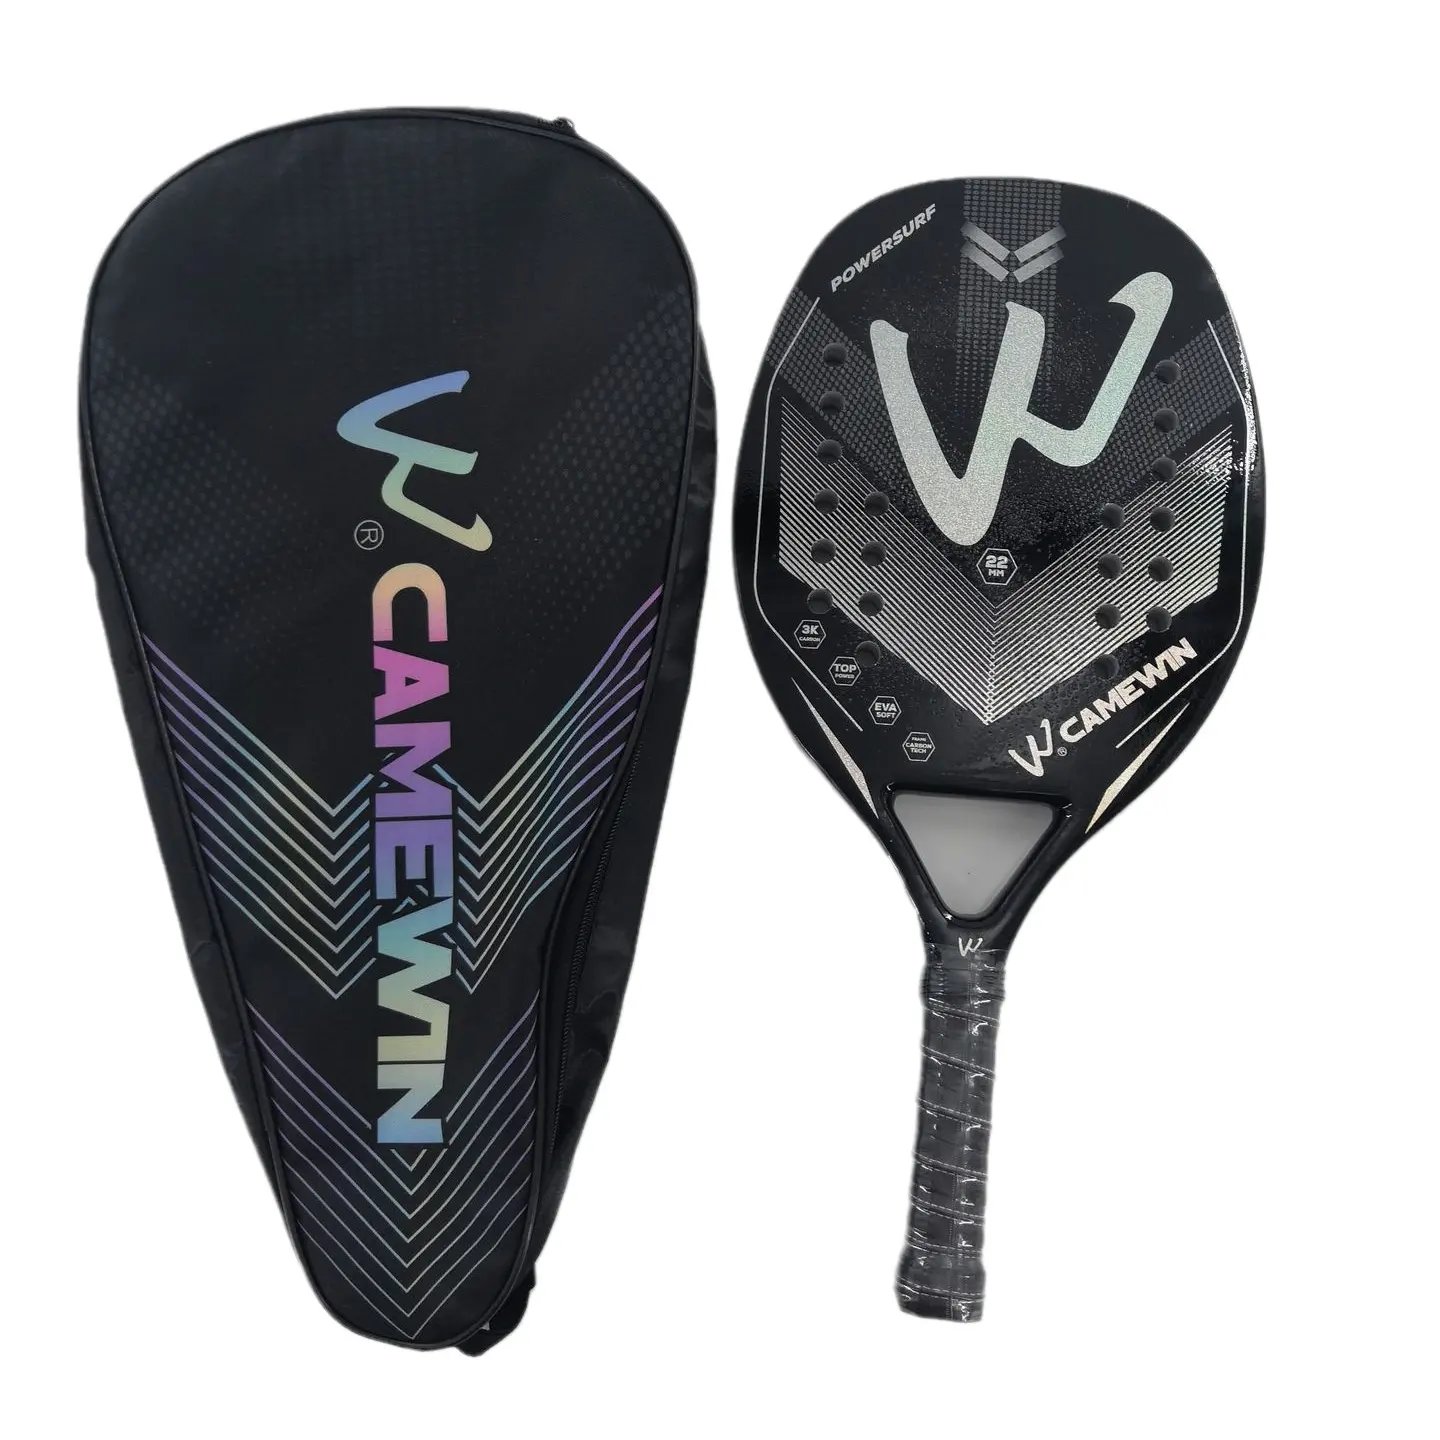 Orijinal plaj tenis raketleri kürek yumuşak Eva çanta ile 3K yüz Raqueta Unisex Camewin yeni tasarım plaj raketleri